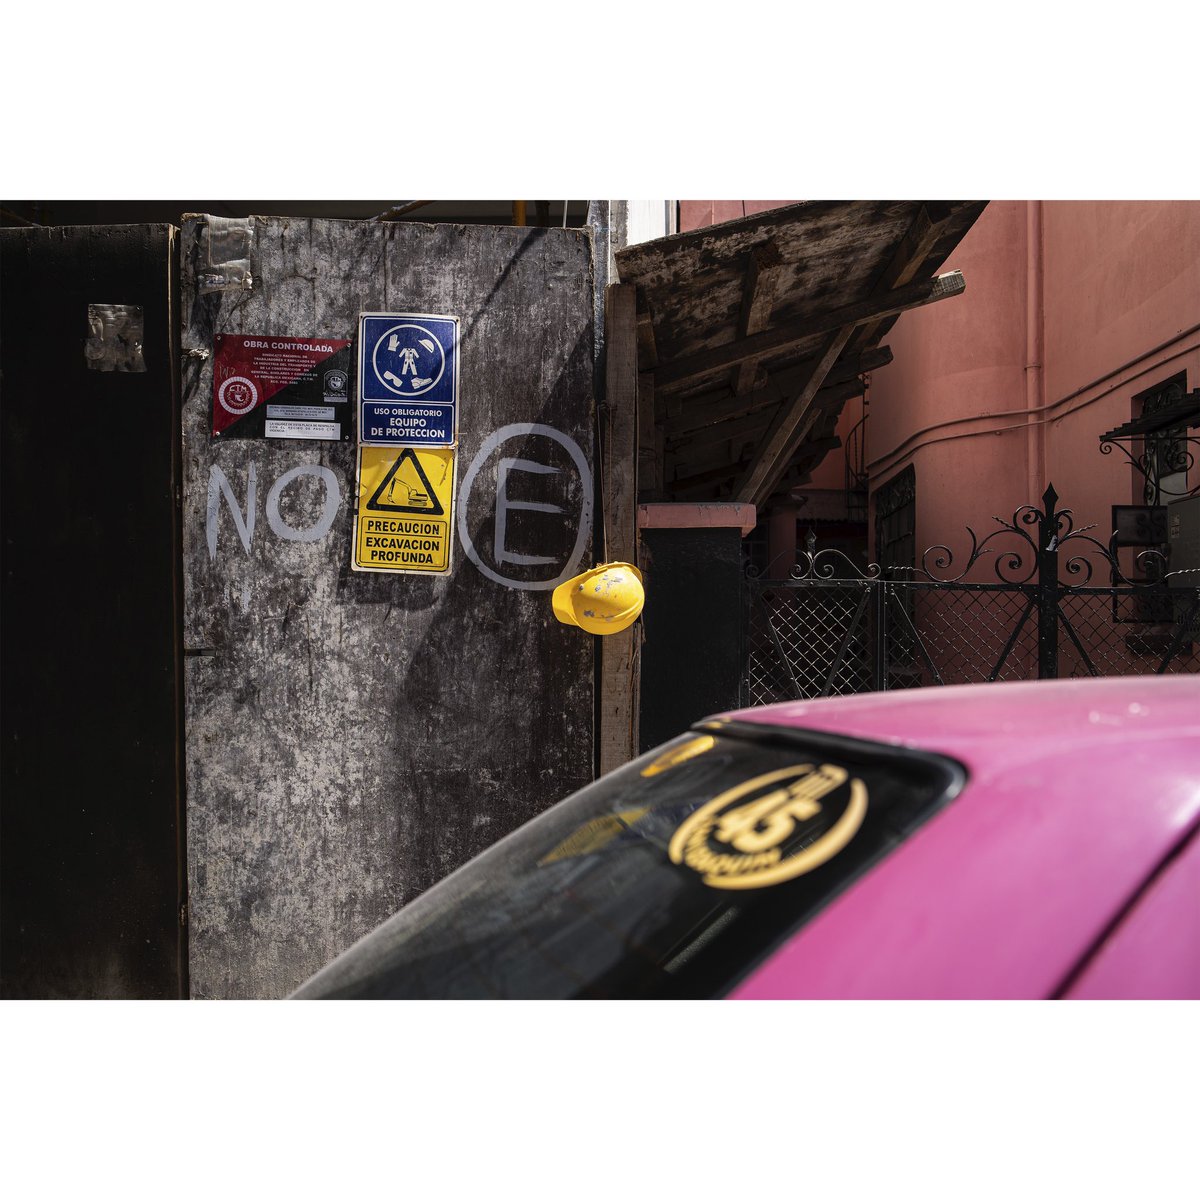 04
#sonyalpha #sonya7iii #foto #fotografia #photo #photography #fotodecallemexico #fotodecalle #streetphotography #streetphotographyméxico #color #rokinon #35mm #35mmphotography #art